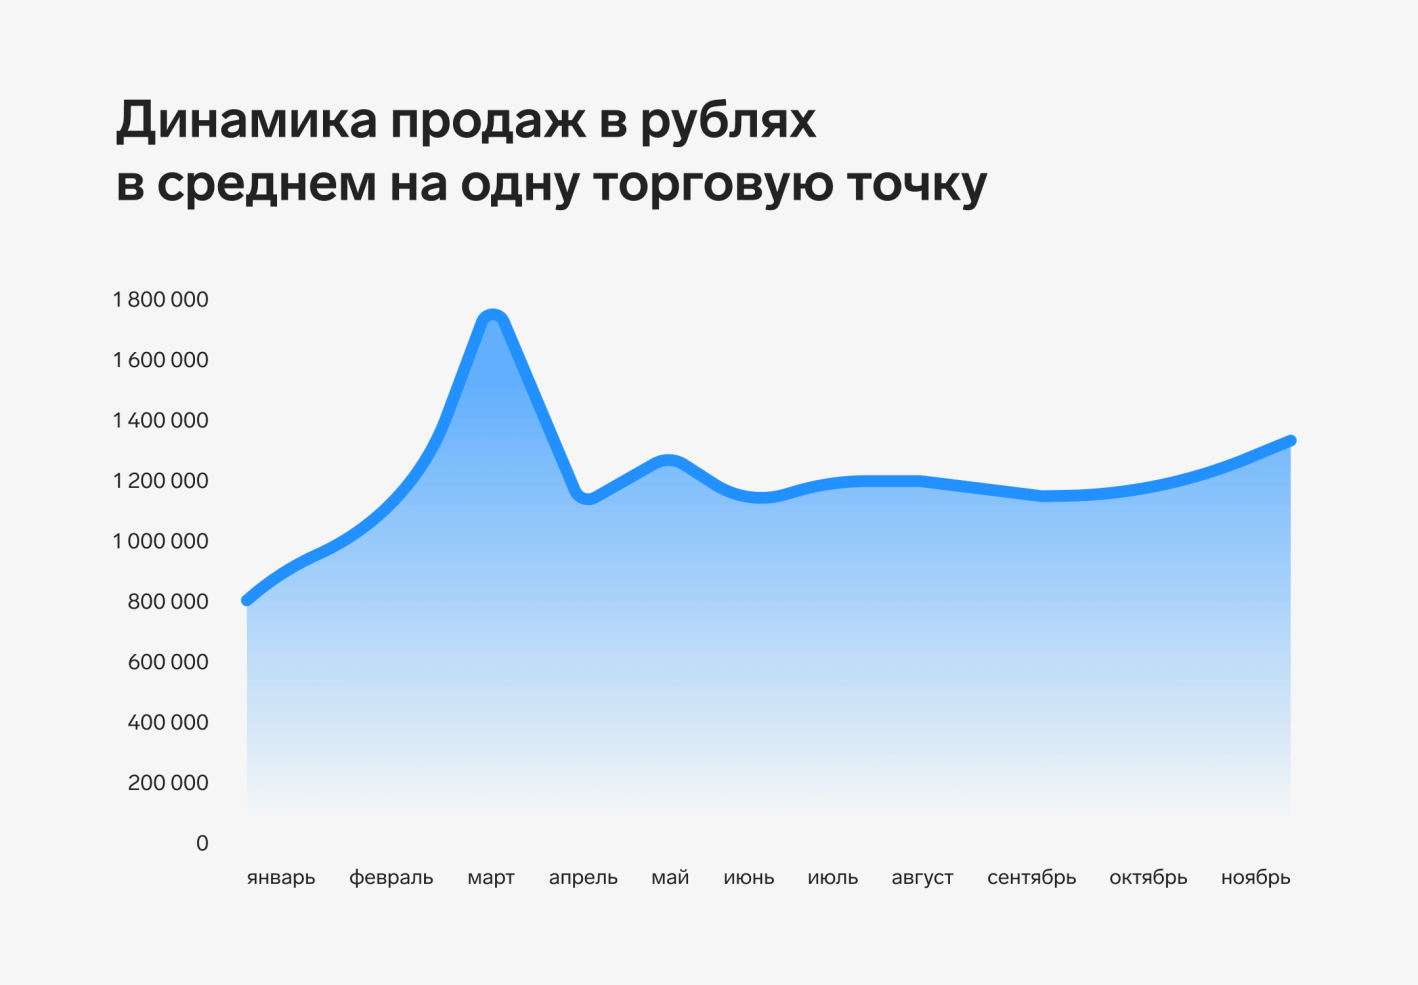 Динамика продаж в рублях в среднем на одну торговую точку